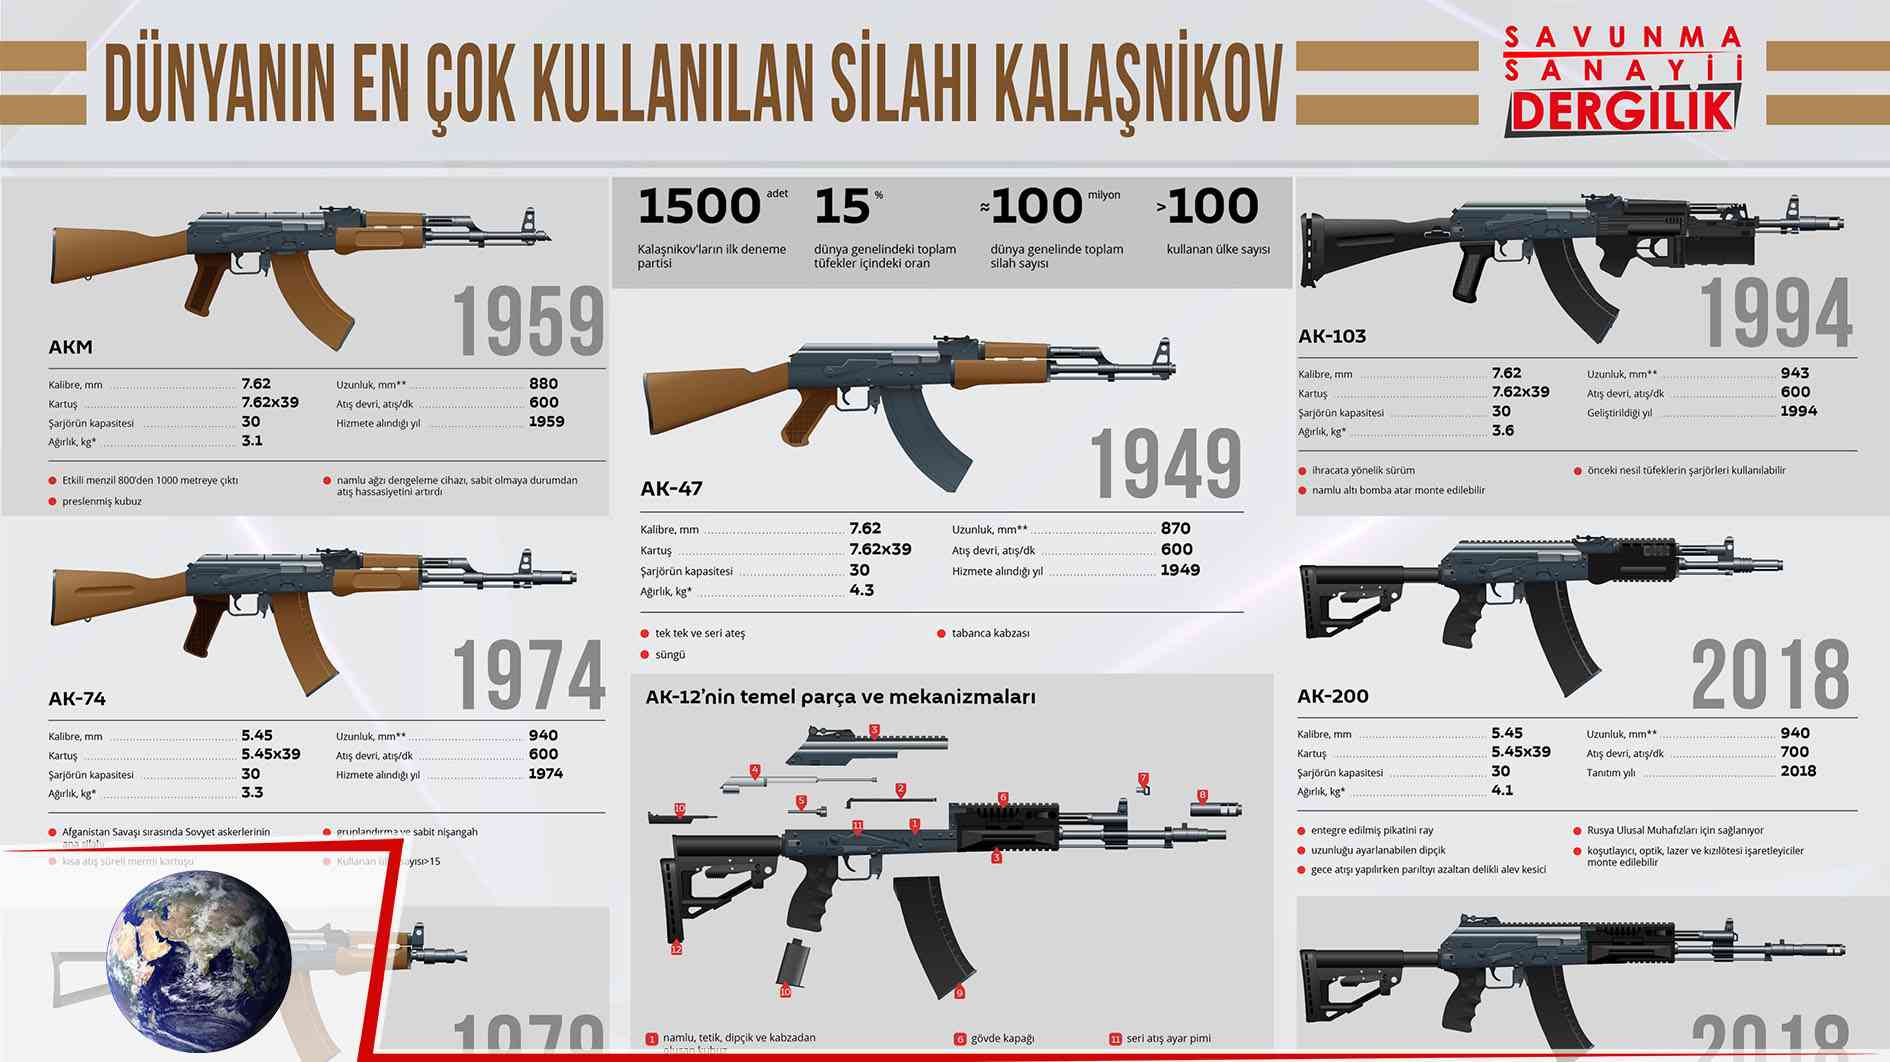 Dünyanın en çok kullanılan silahı Kalaşnikov